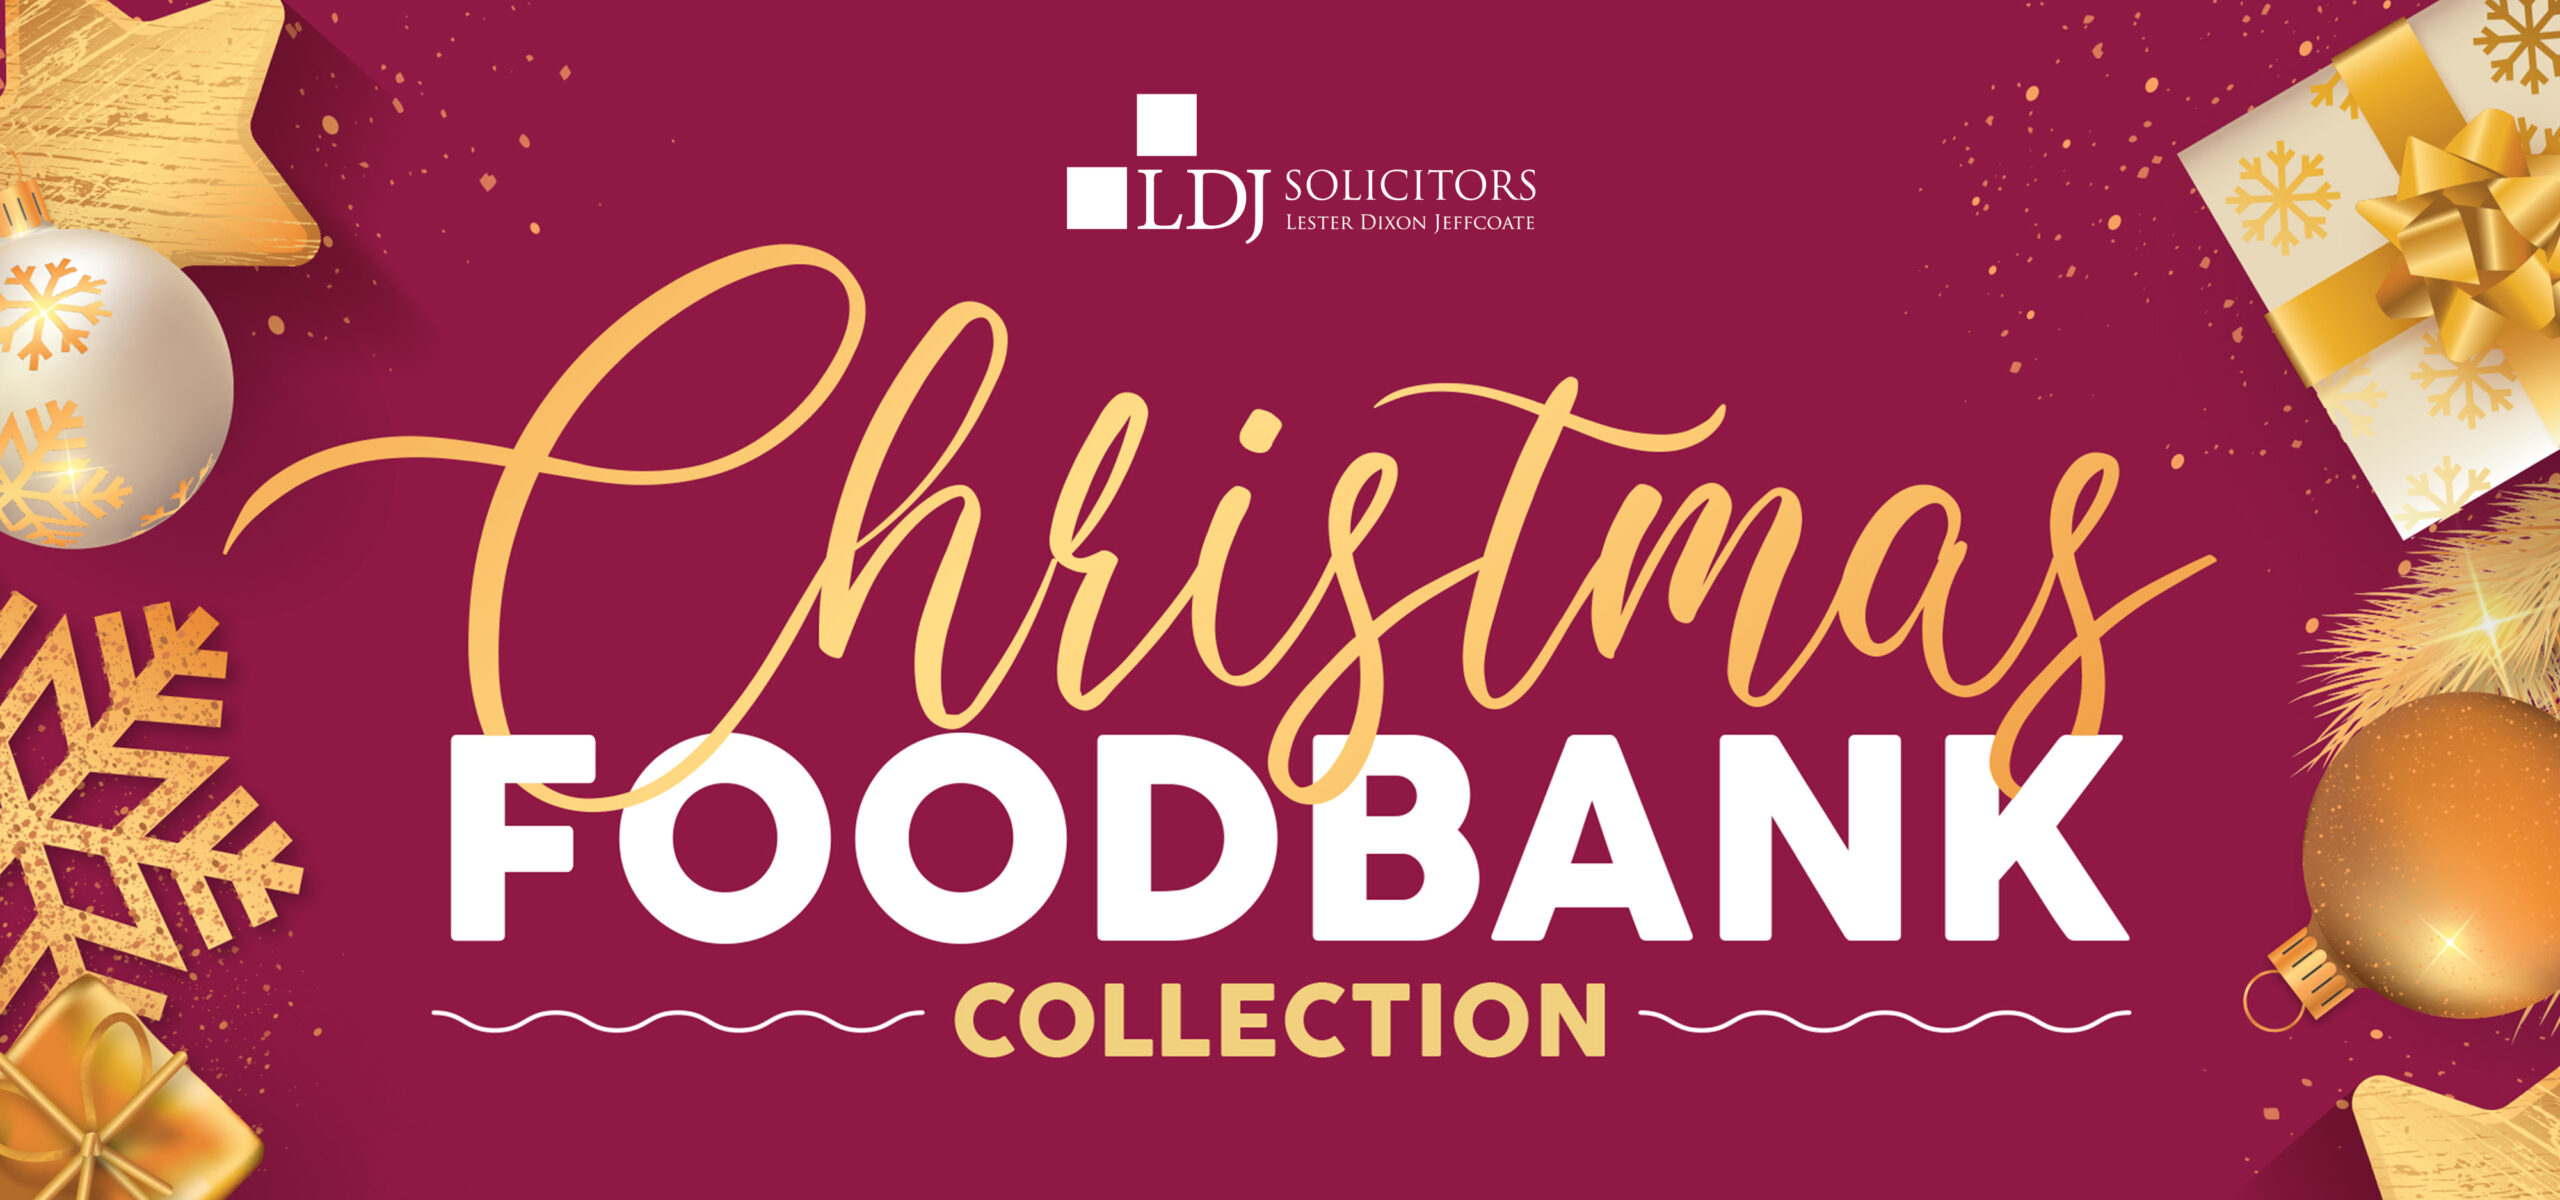 Christmas Foodbank Collection